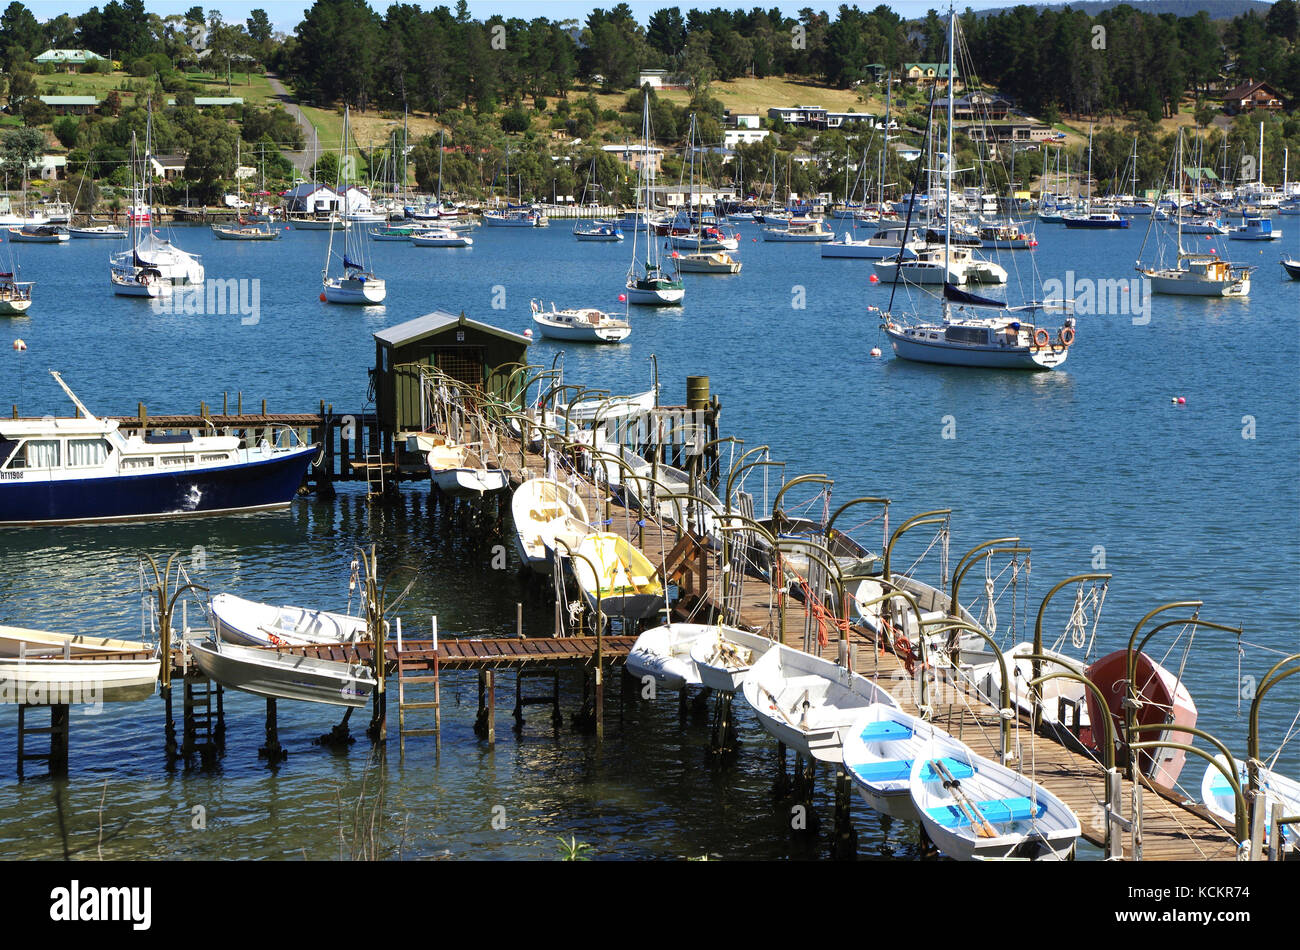 Des bateaux amarrés à Kettering, une ville côtière sur le chenal d’Entrecasteaux qui sépare l’île Bruny de la Tasmanie continentale. Être situé près de t Banque D'Images